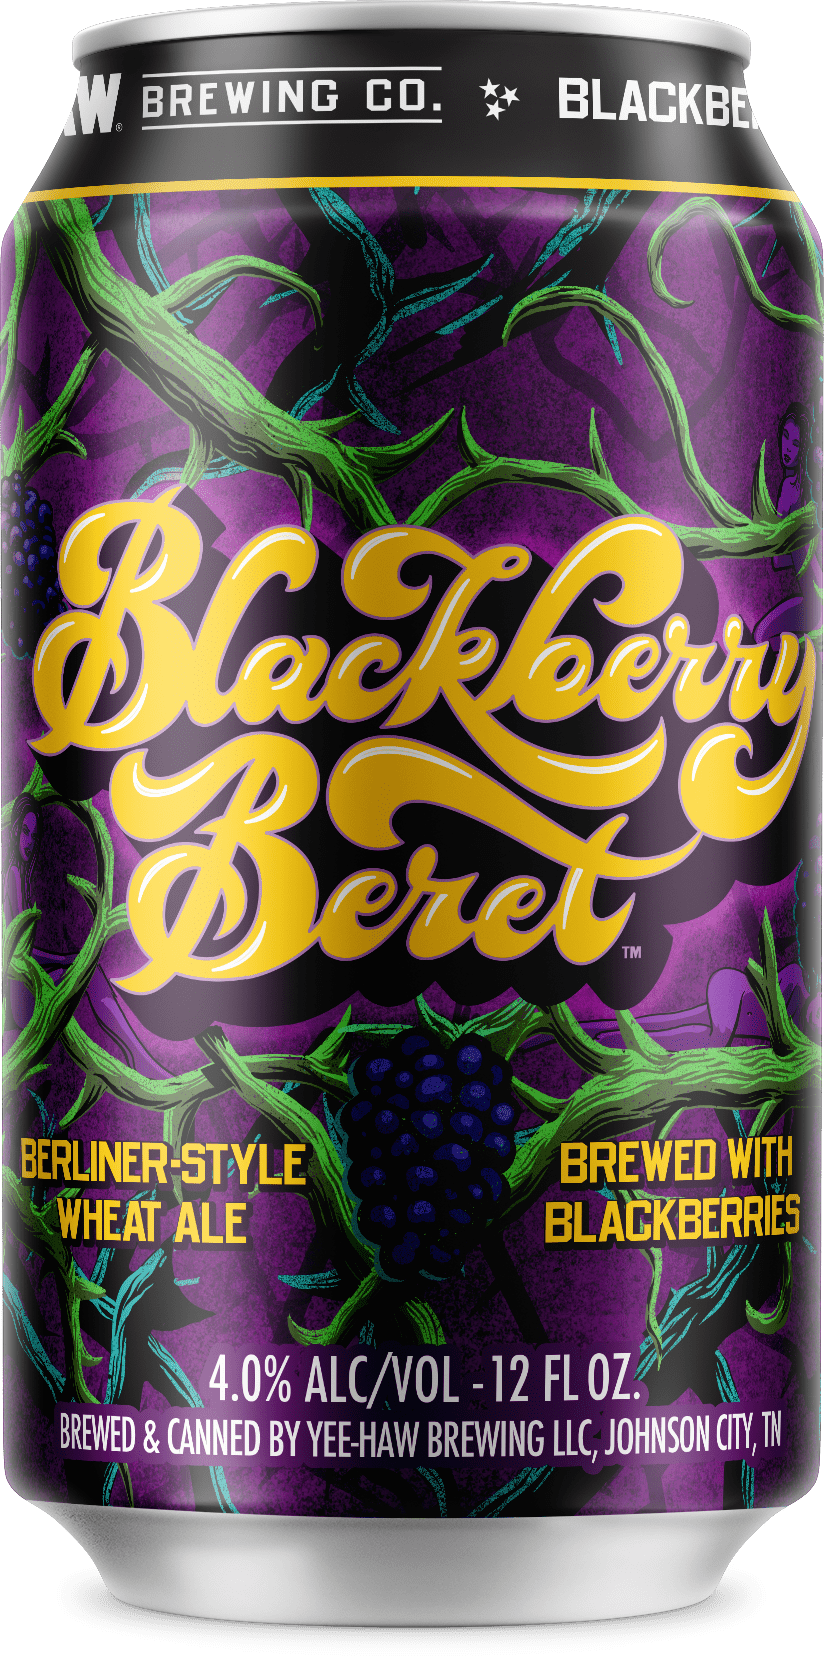 Blackberry Beret beer can